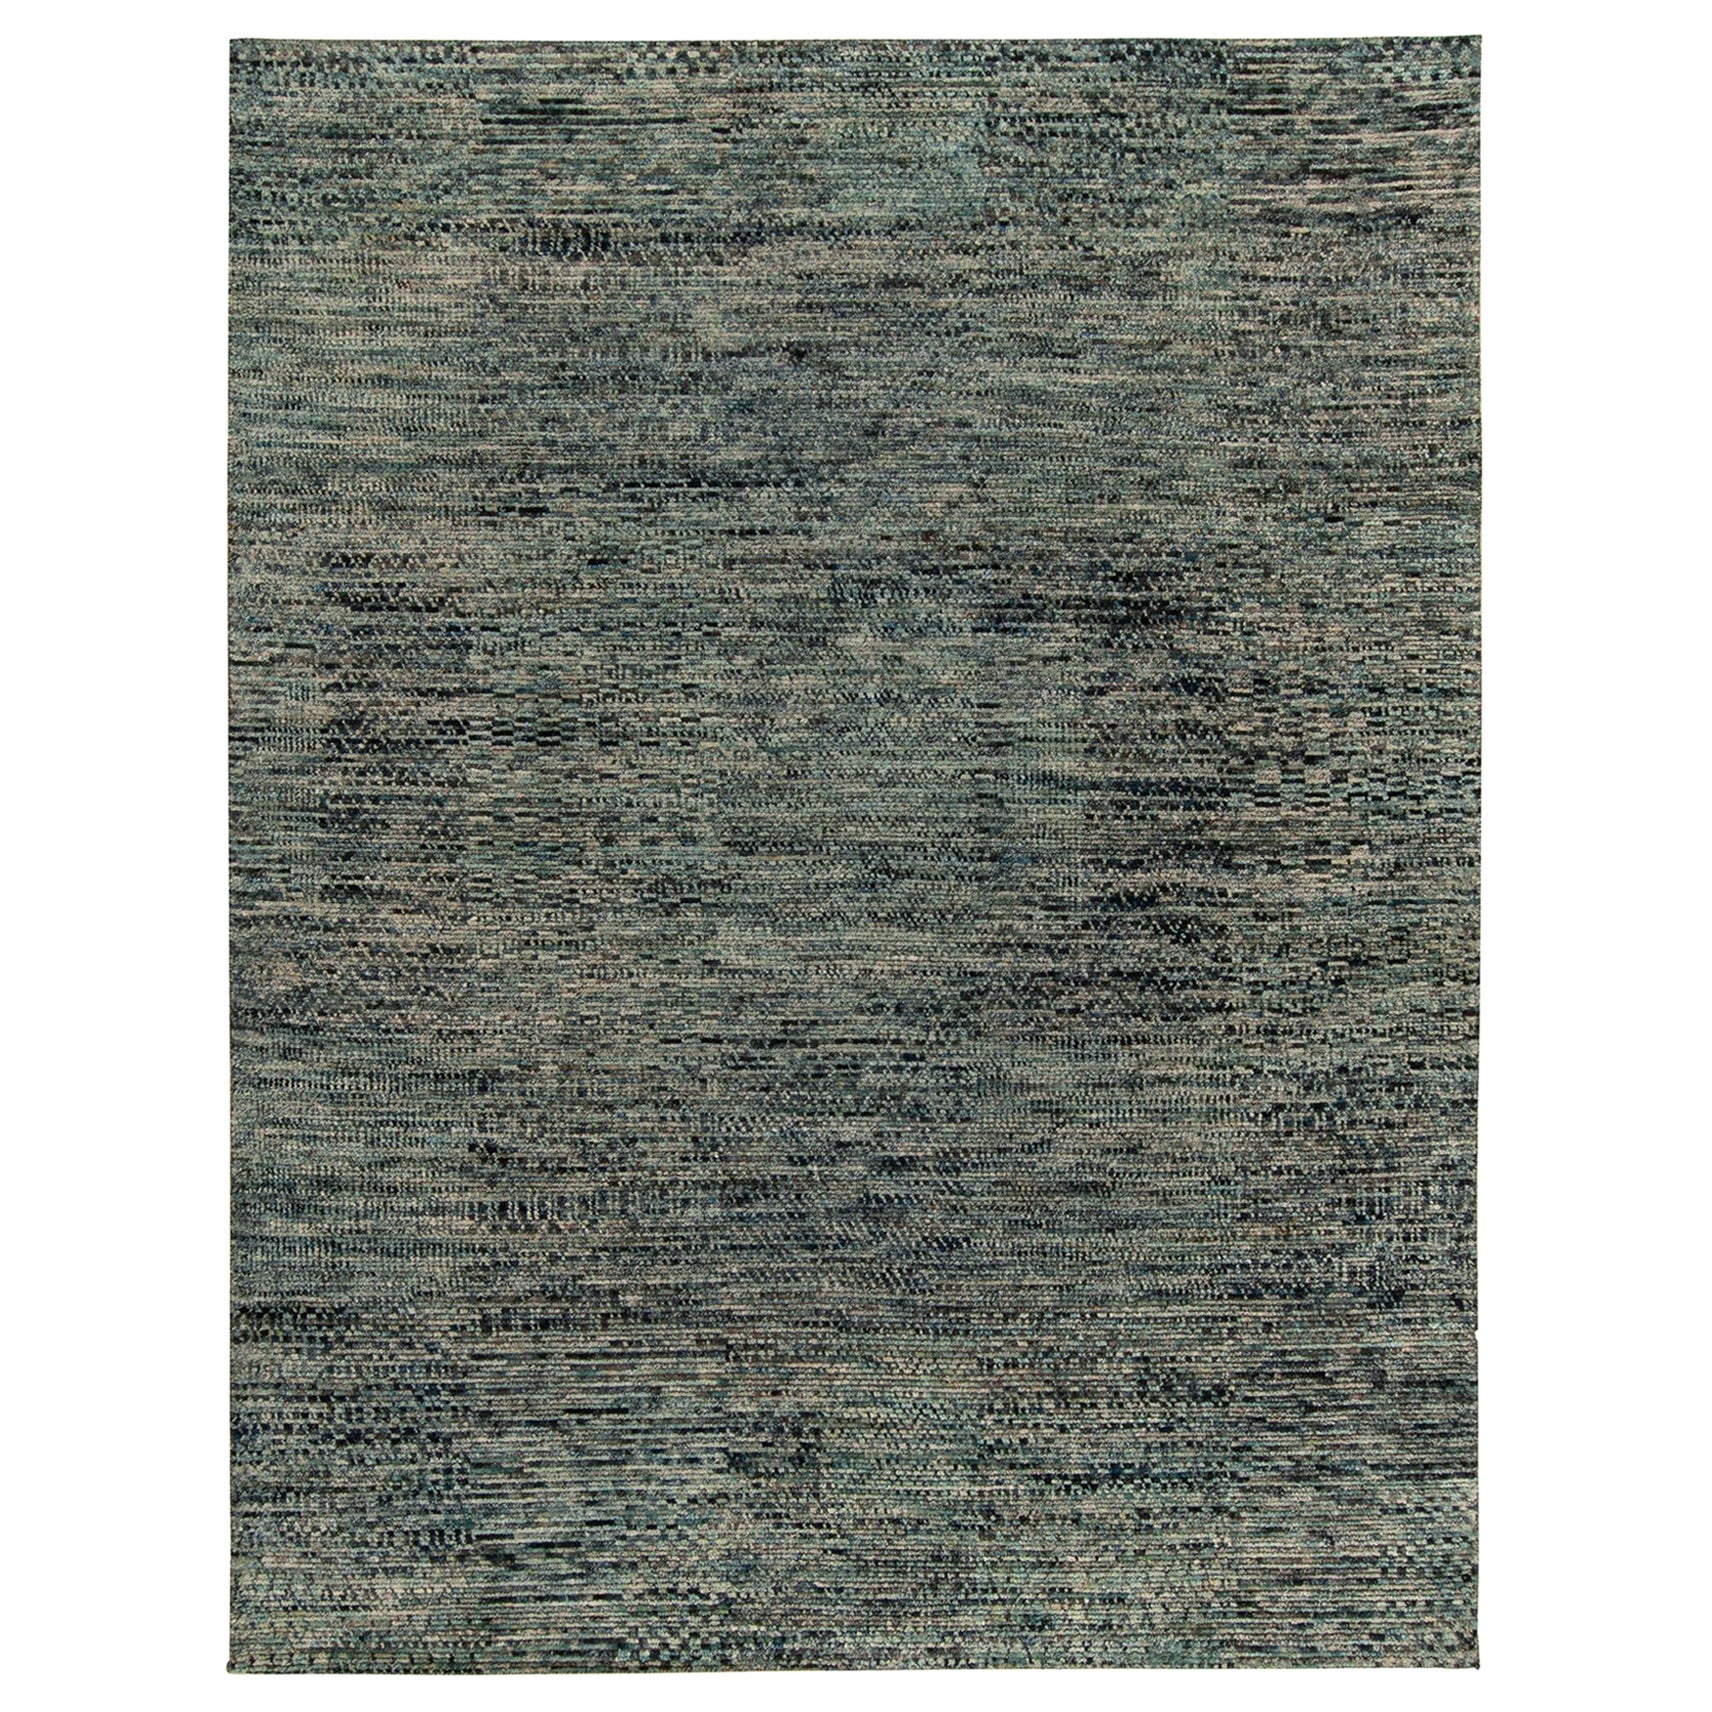 Moderner Teppich von Teppich & Kilims mit blauen, schwarzen und weißen geometrischen Striae-Mustern